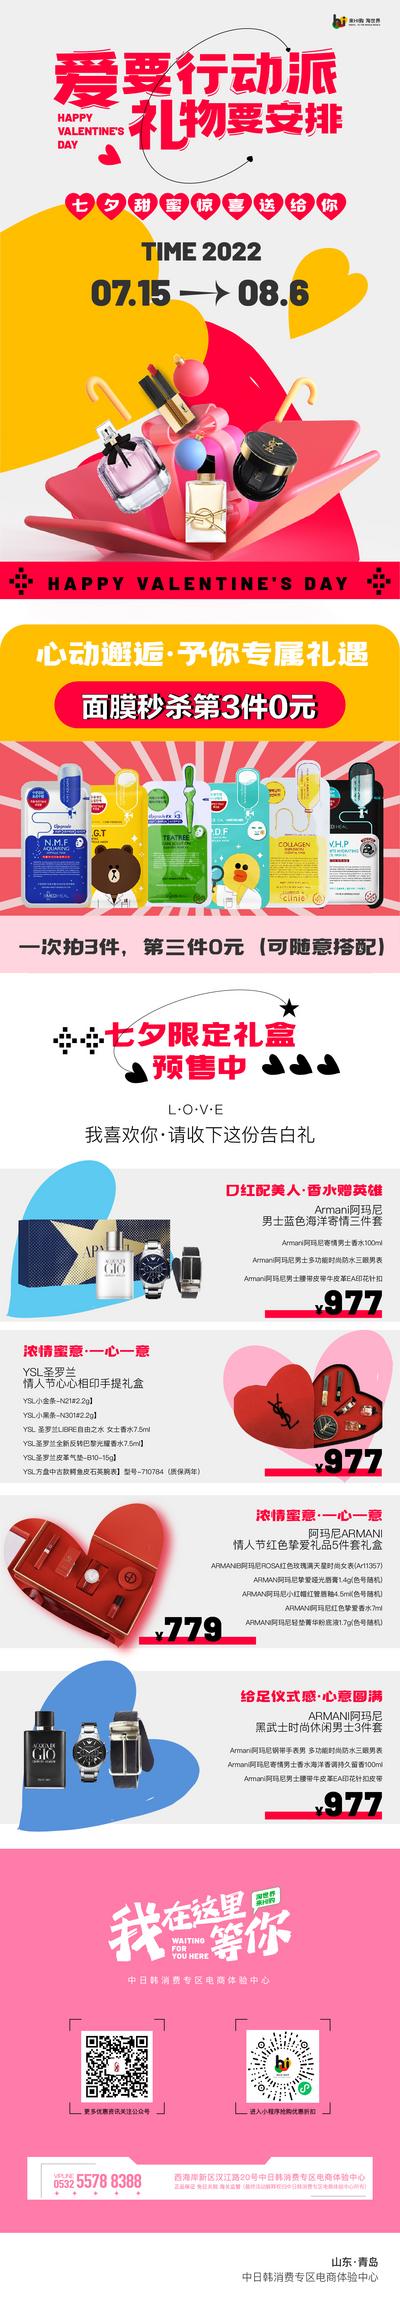 南门网 海报 长图 商场 中国传统节日 七夕 情人节 促销 活动